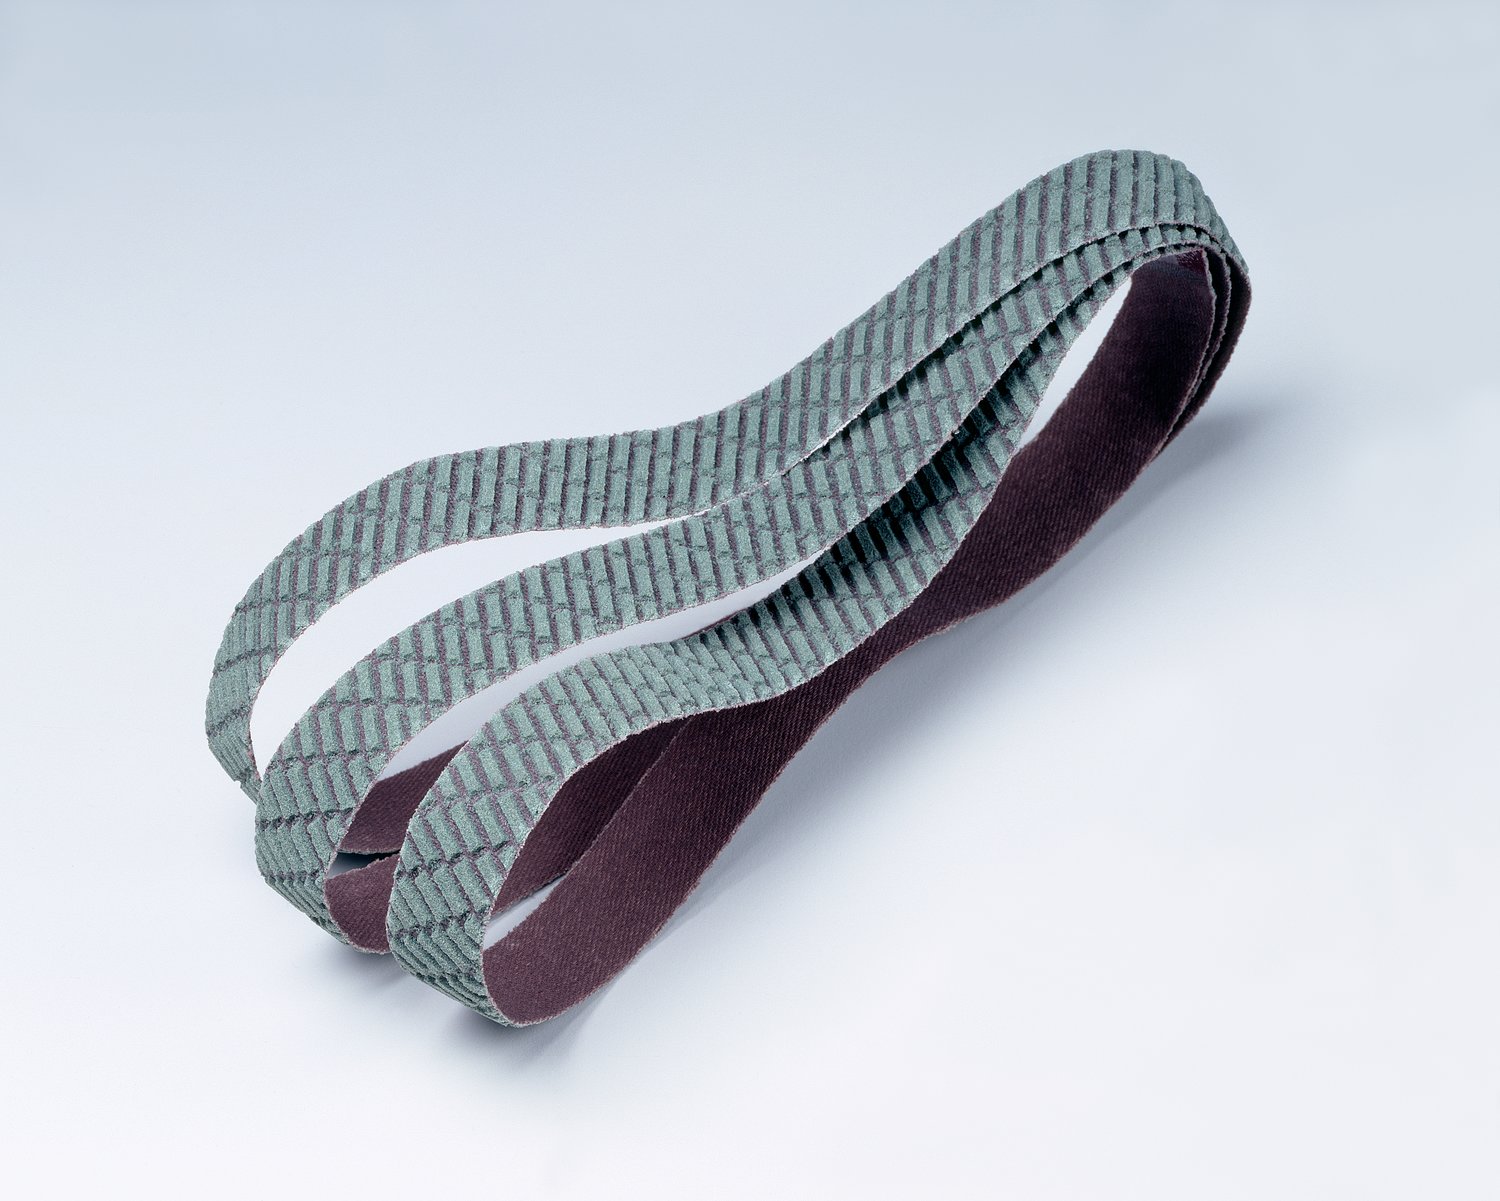 7010516056 - 3M Trizact Cloth Belt 327DC, A160 X-weight, 1-3/16 in x 24-1/2 in,
Film-lok, Full-flex, Scallop B